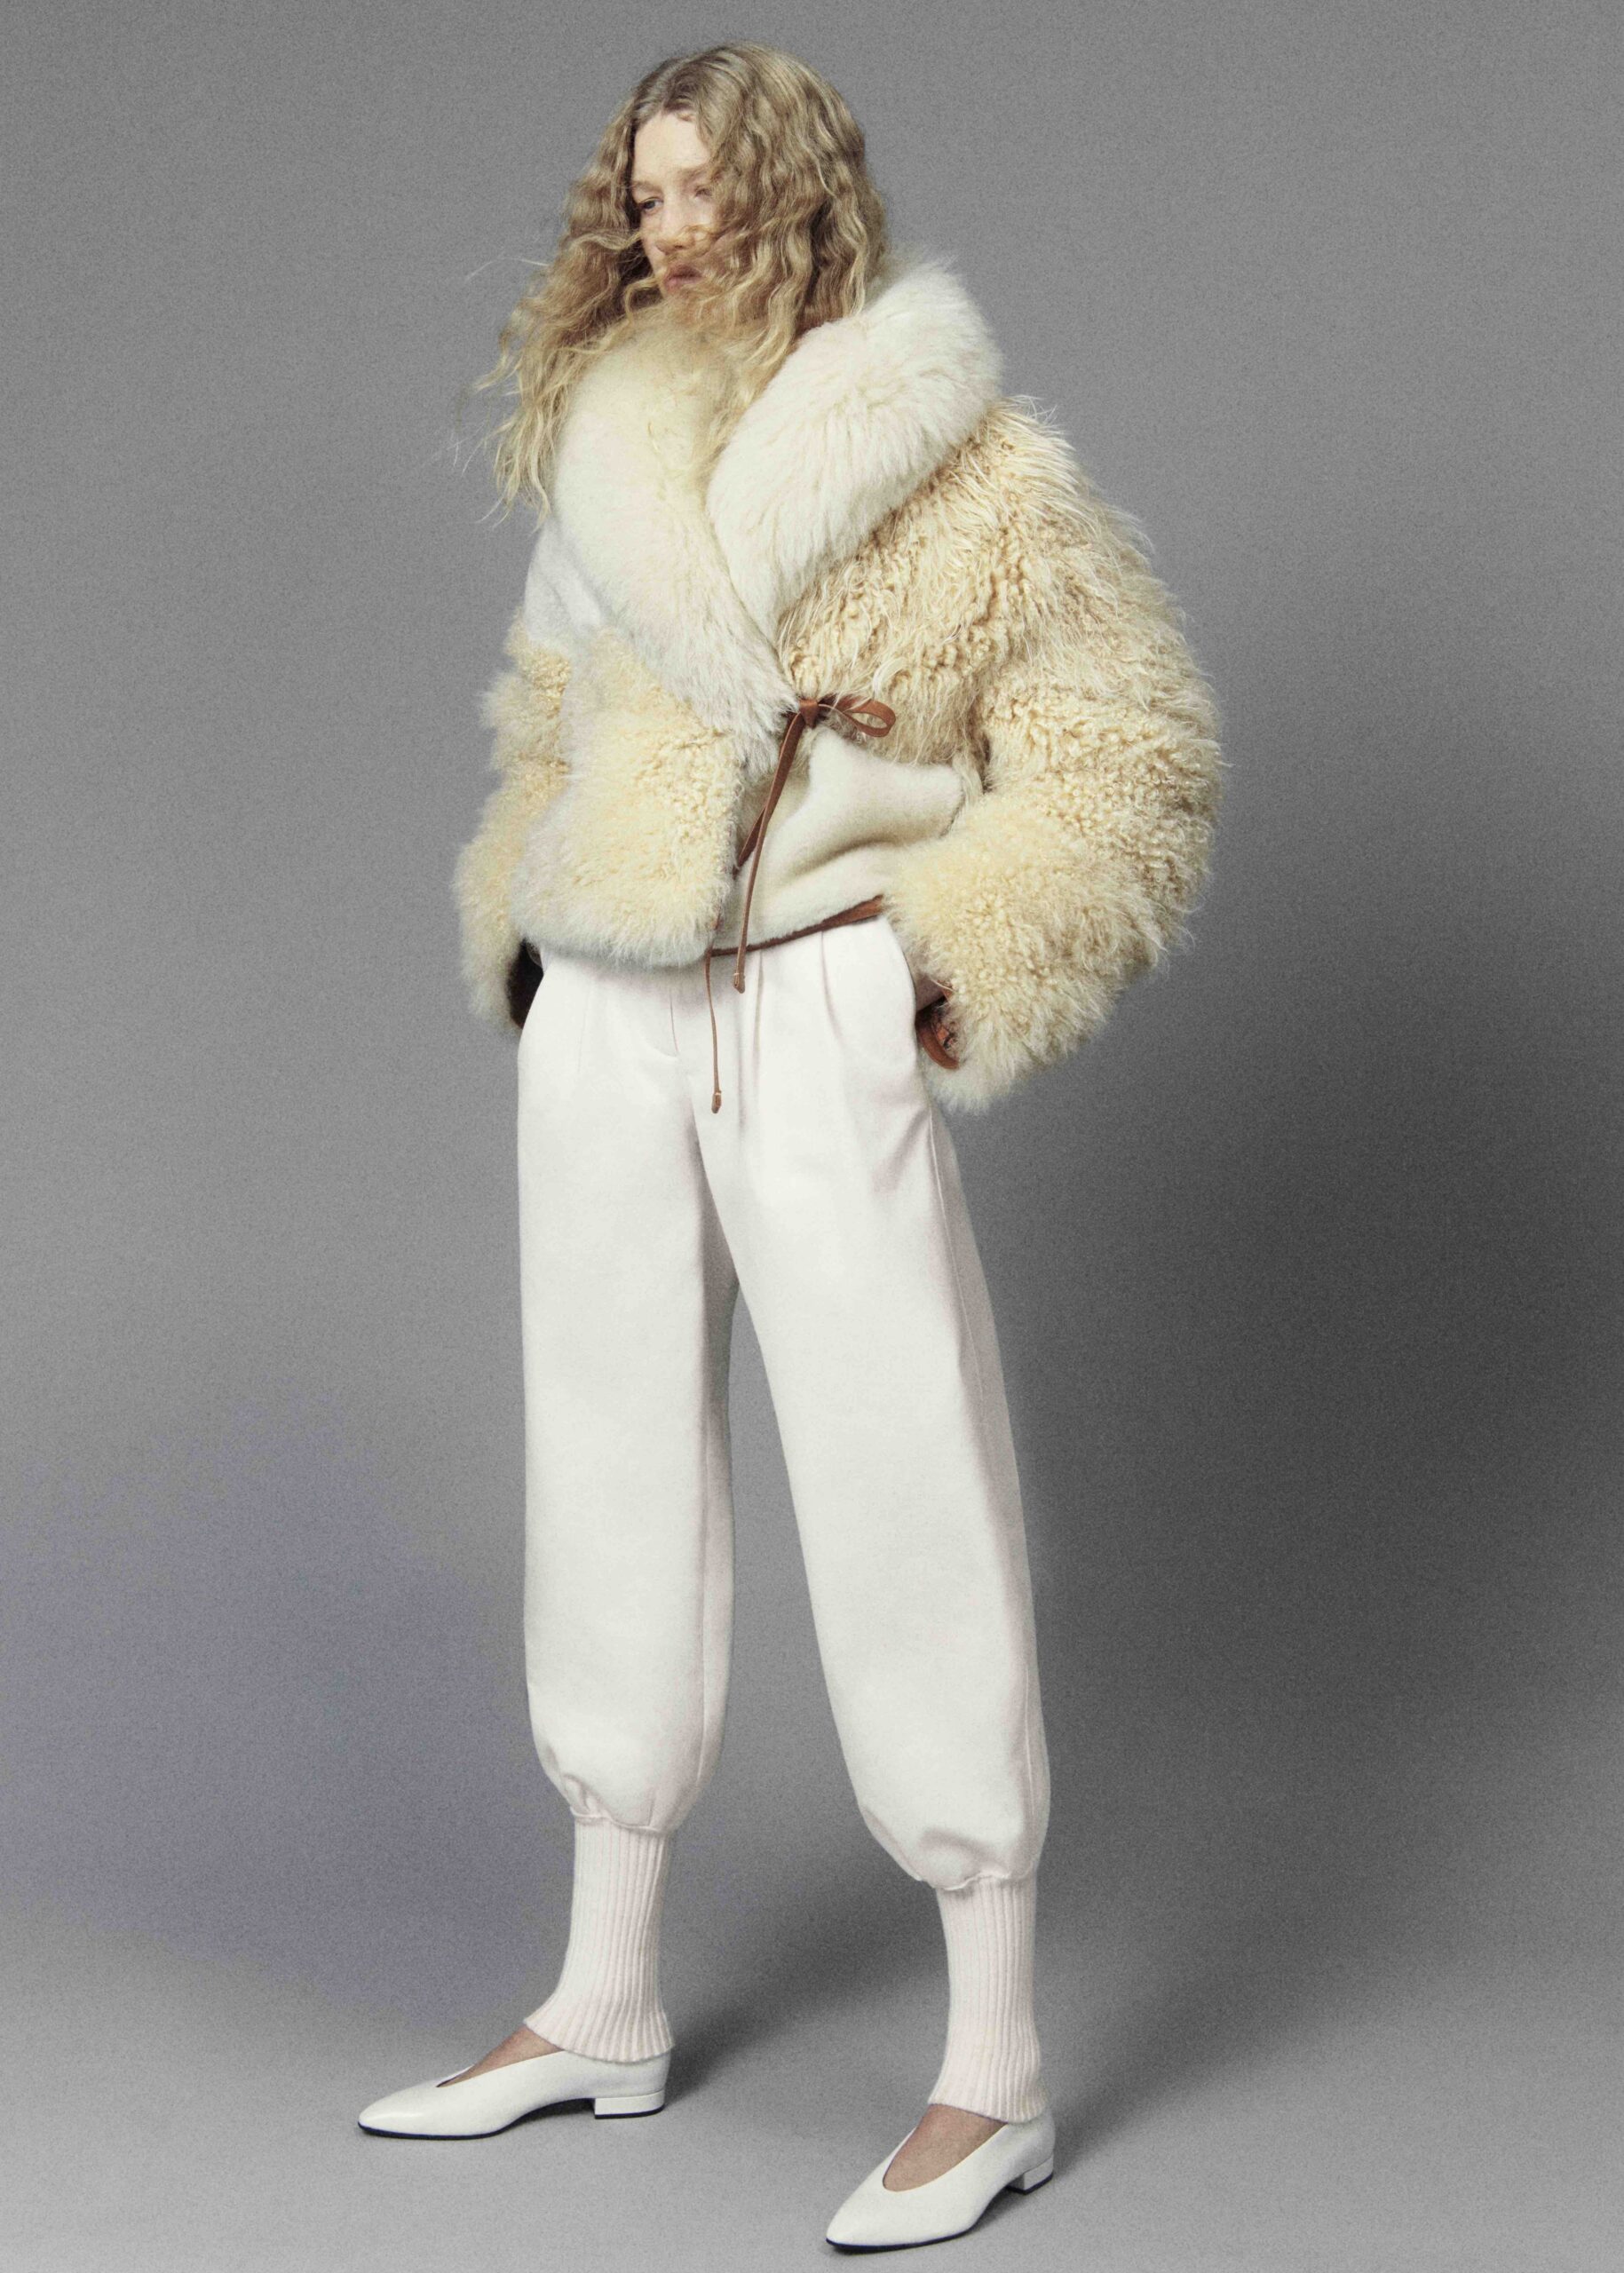 Sofia Coppola Wore Loro Piana & Chanel Haute Couture To The